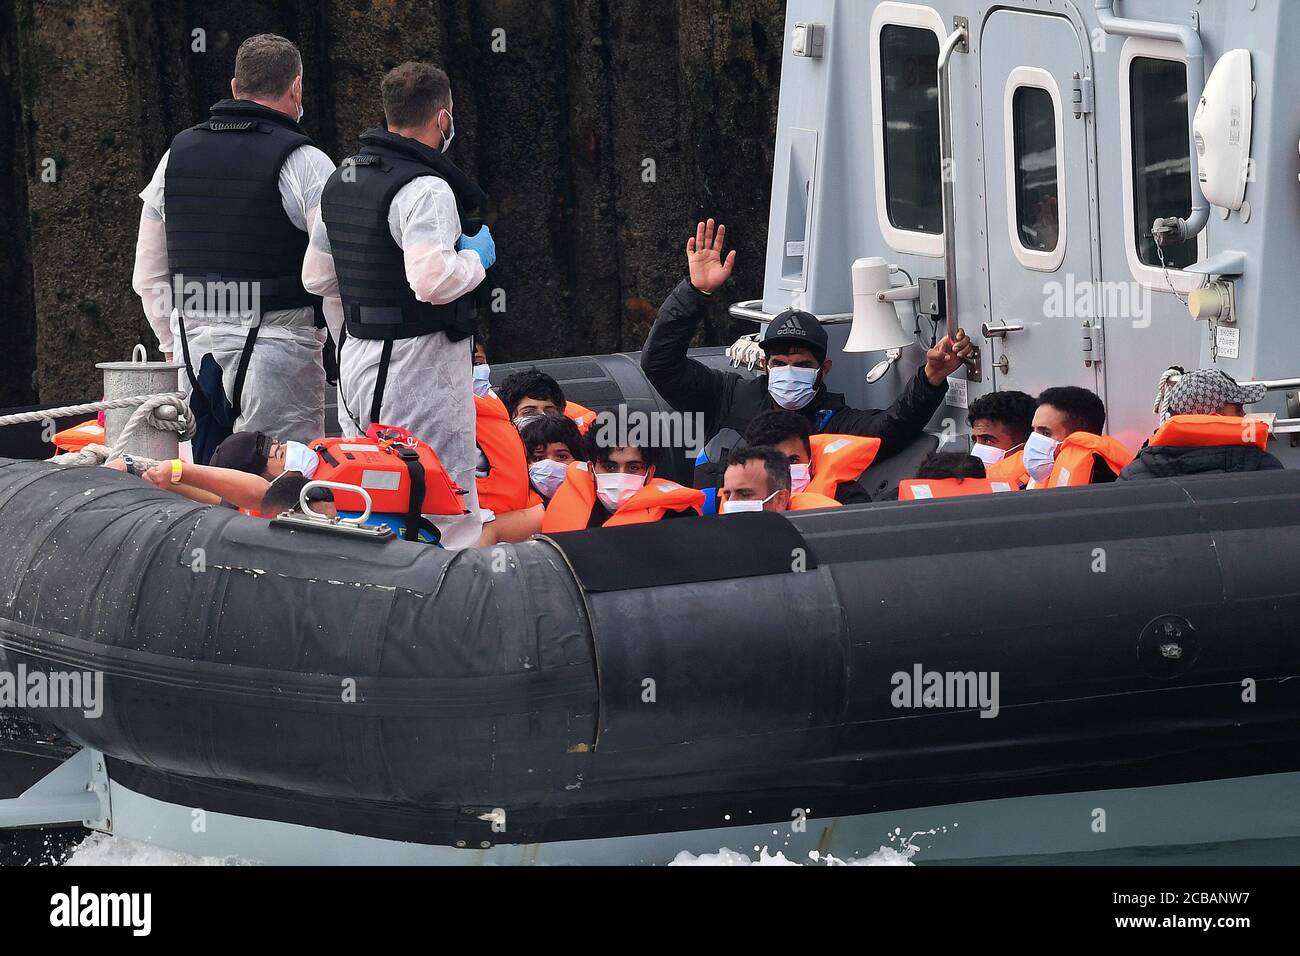 Un gruppo di persone che si pensa siano migranti, si sta sventolando, sono portate a dover, Kent, dagli ufficiali della Border Force a seguito di un certo numero di piccoli incidenti in barca nella Manica oggi. Foto Stock